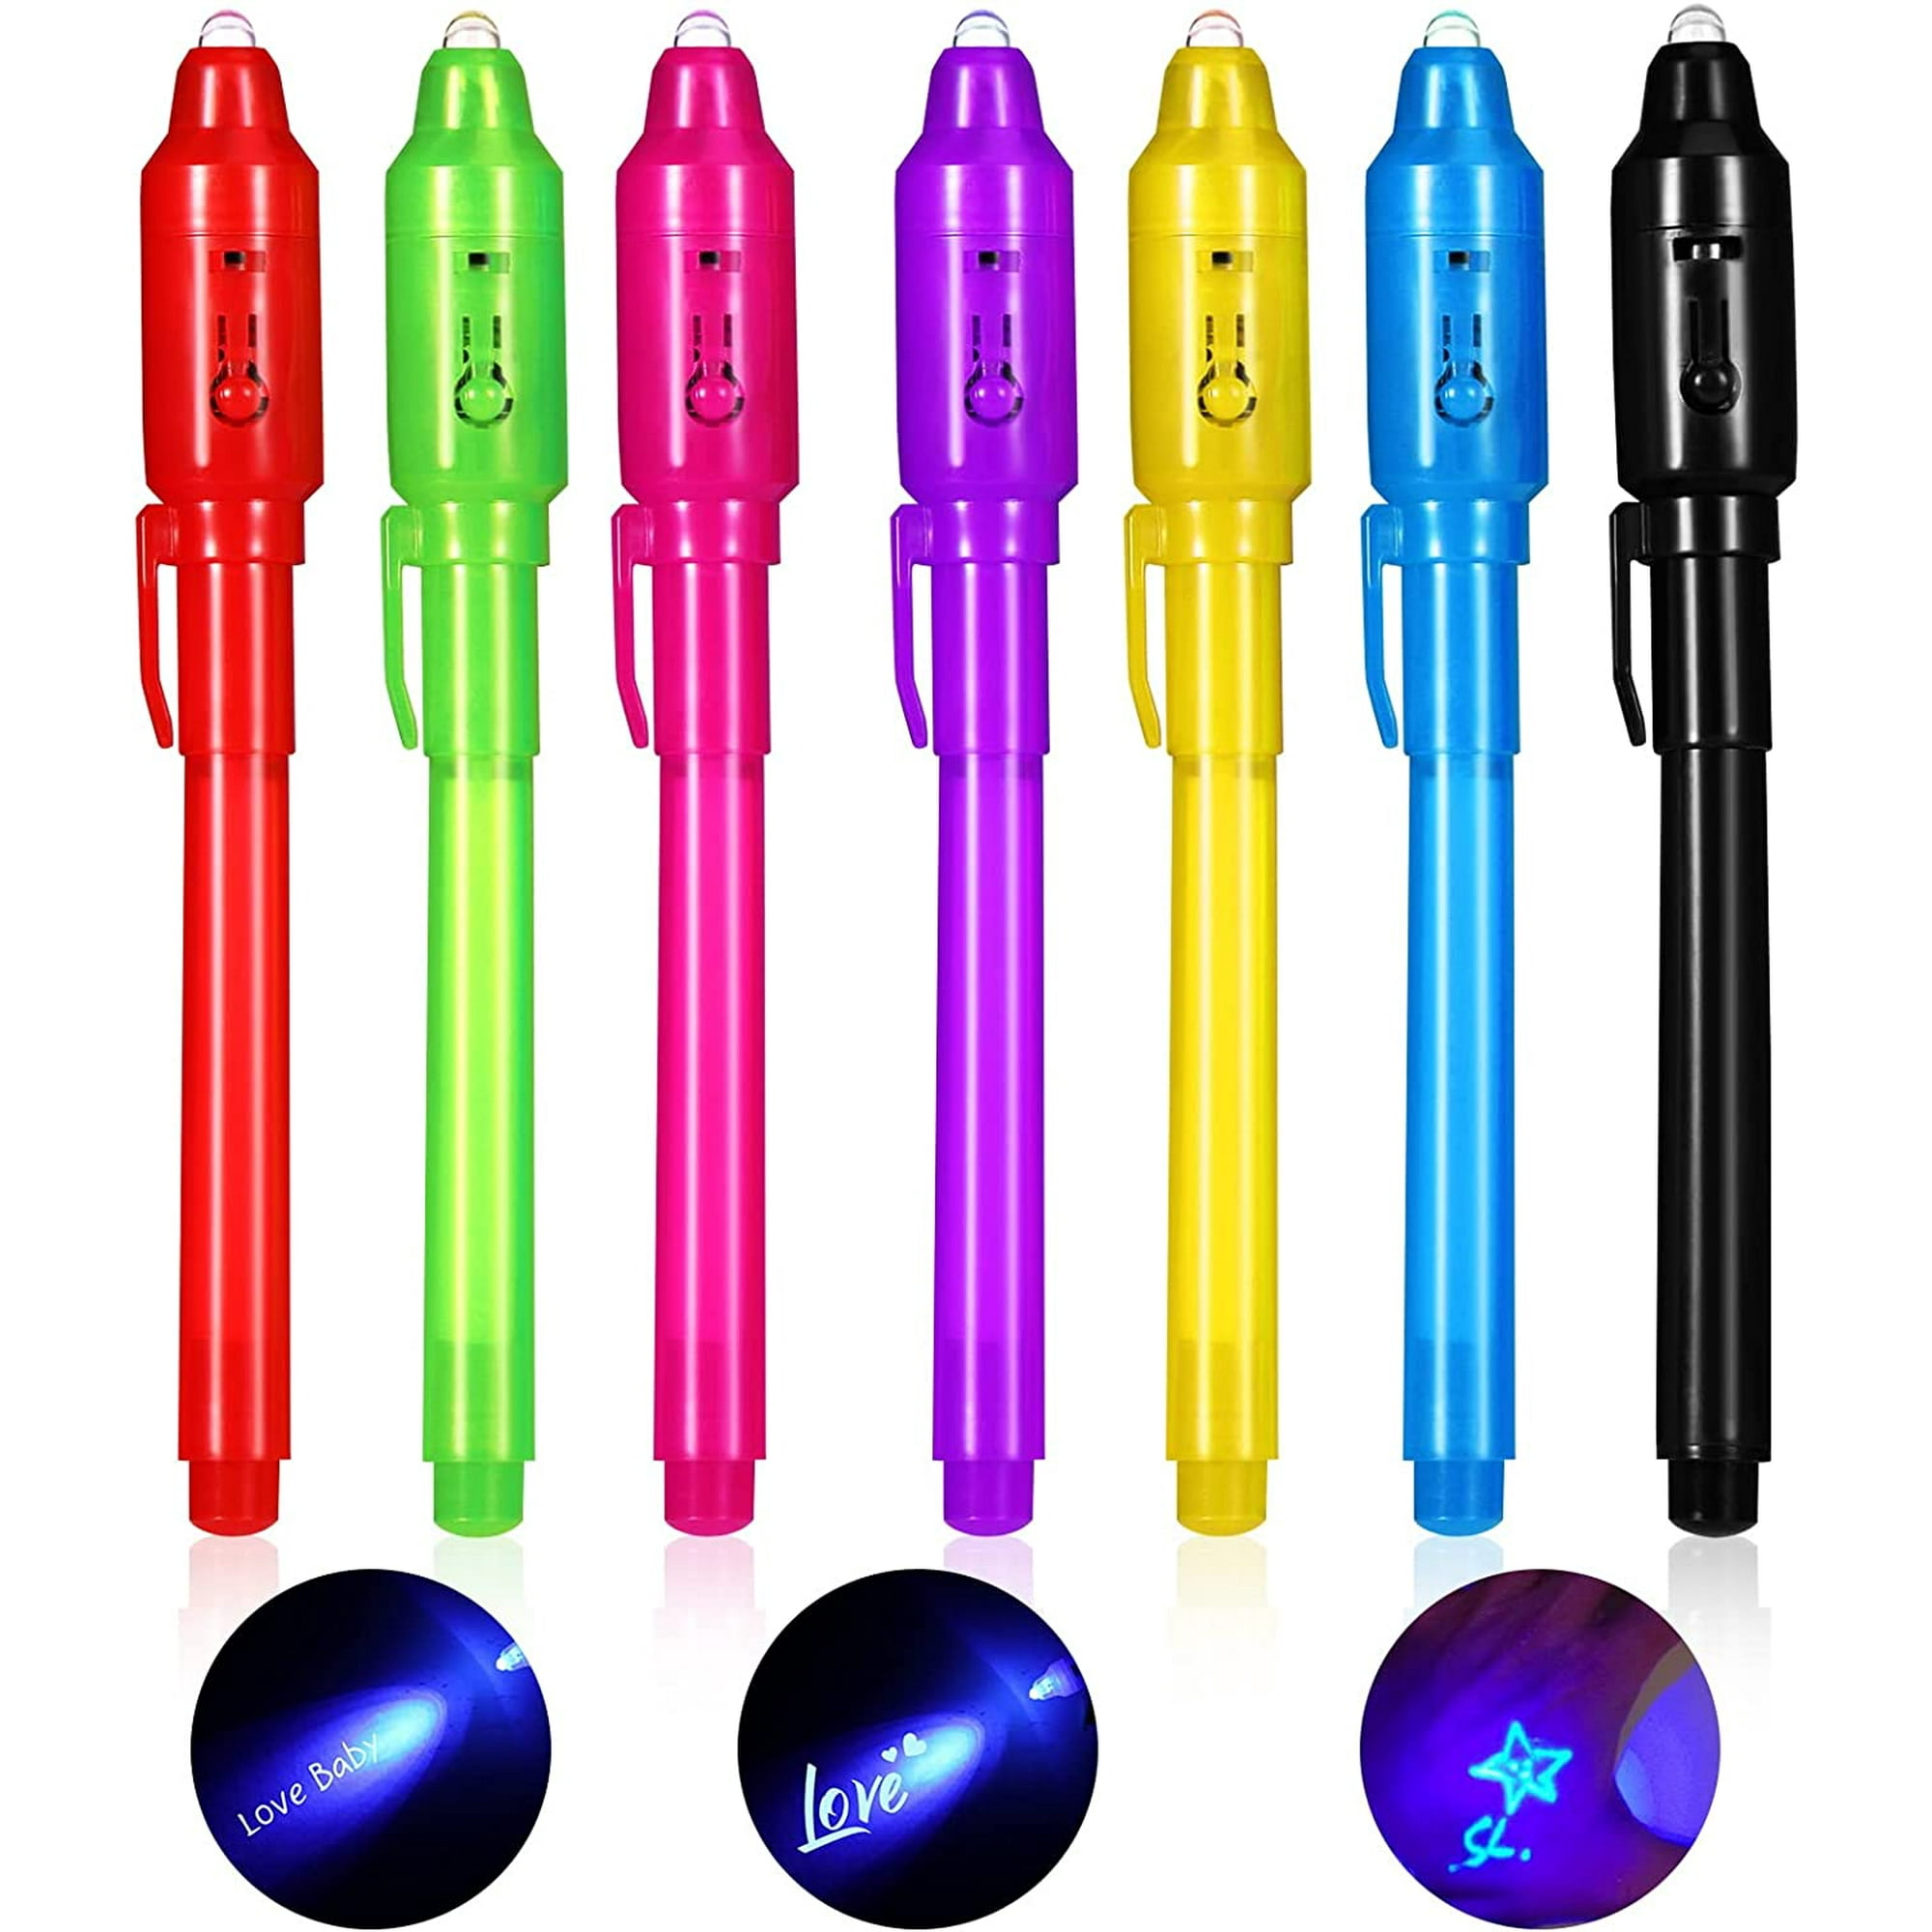 Bolígrafo de tinta Invisible que brilla en la oscuridad integrada con  Tmvgtek luz UV regalos y marcado de seguridad 2447 12 24 piezas